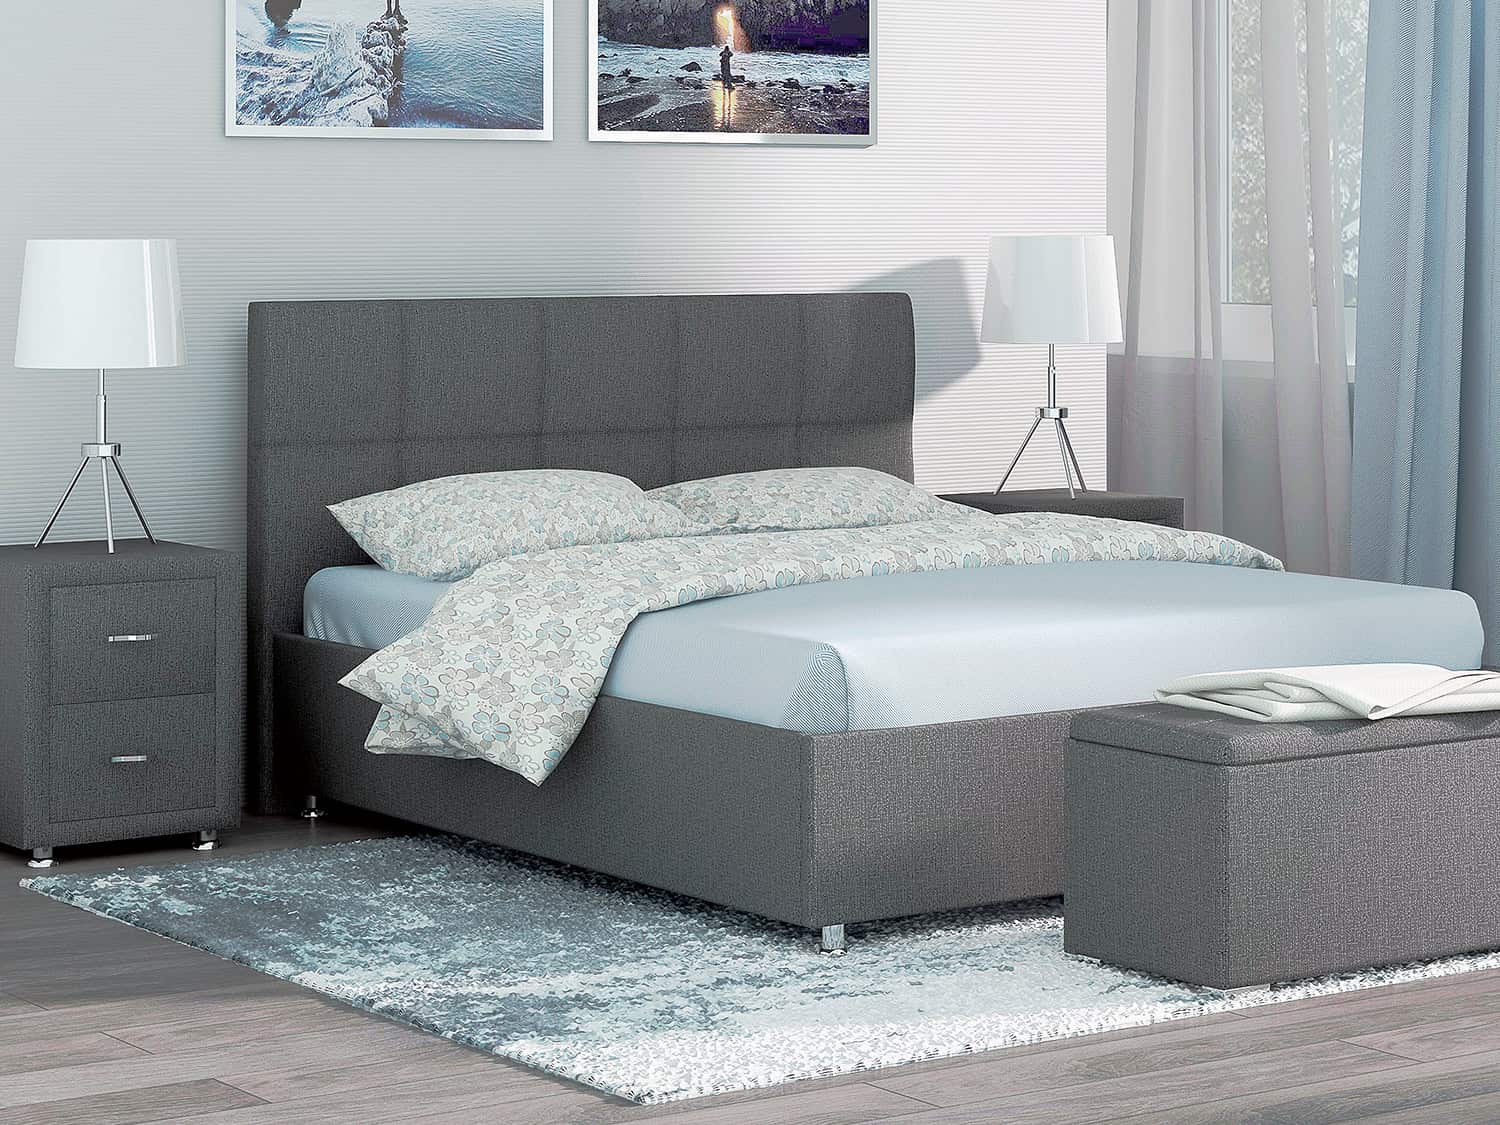 Trento - недорогая кровать для спальни с подъемным механизмом